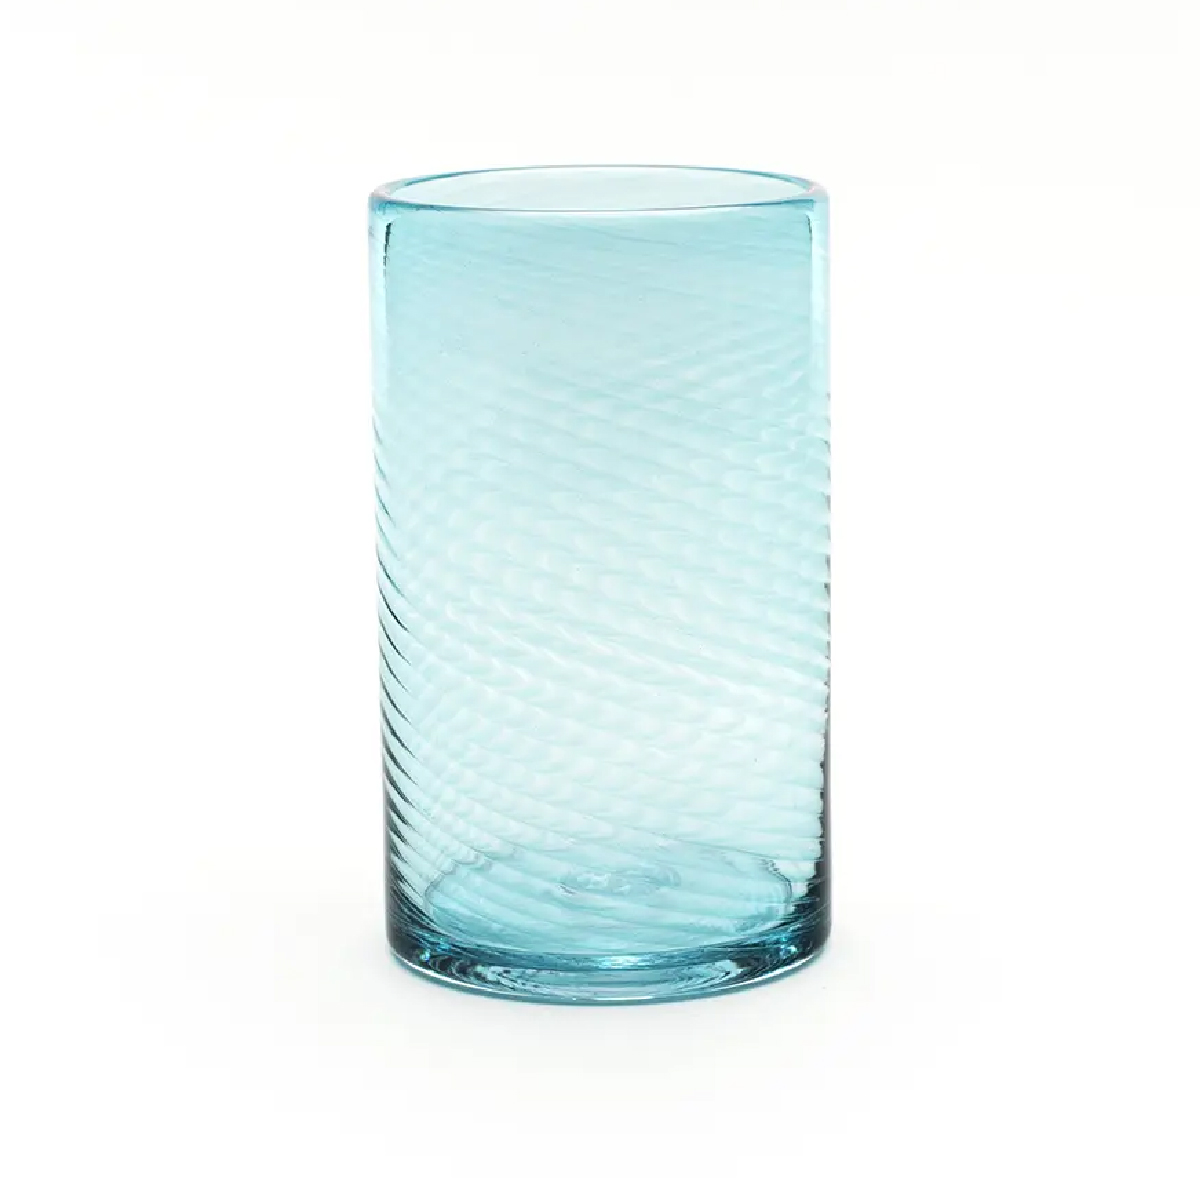 Saban Glass - Twisty High Ball: Copper Blue